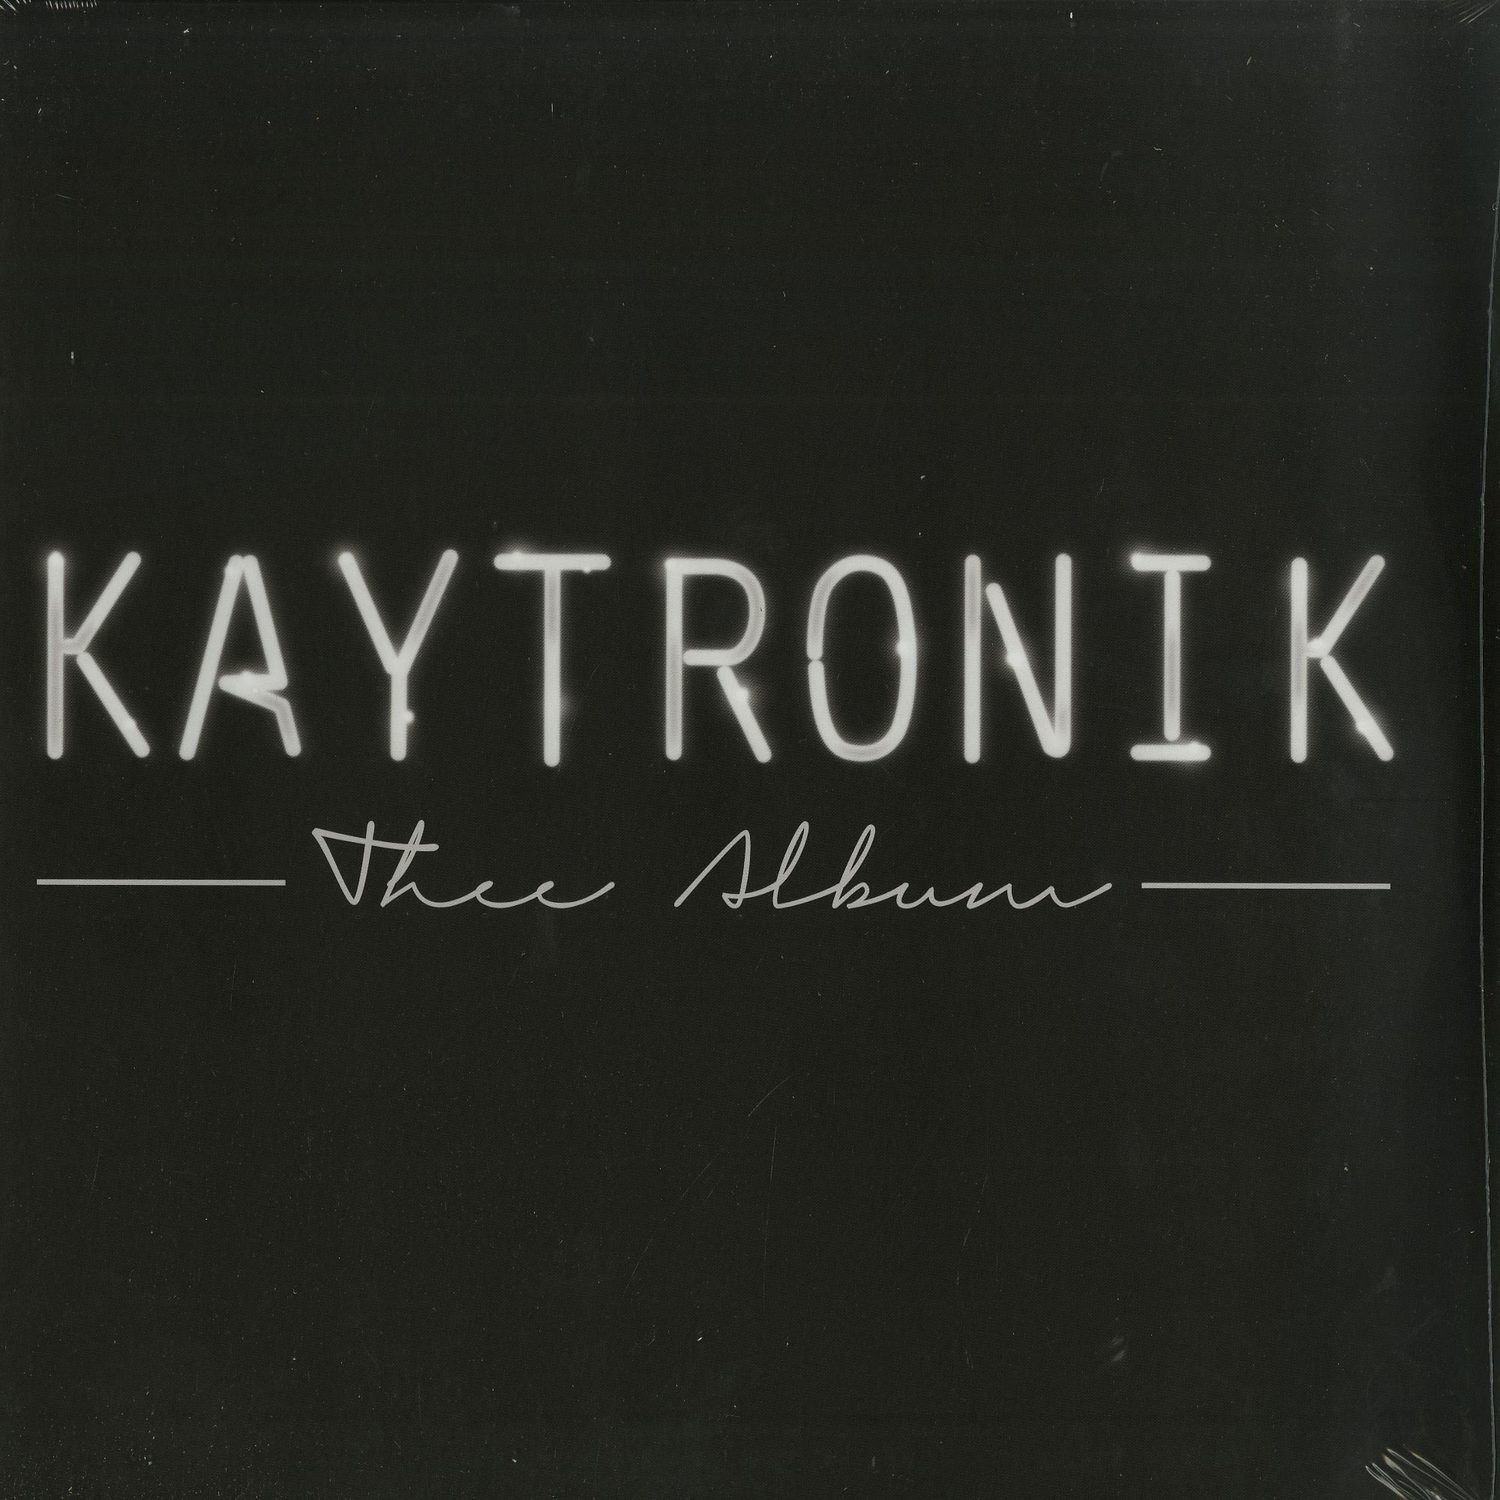 Kaytronik - THEE ALBUM 